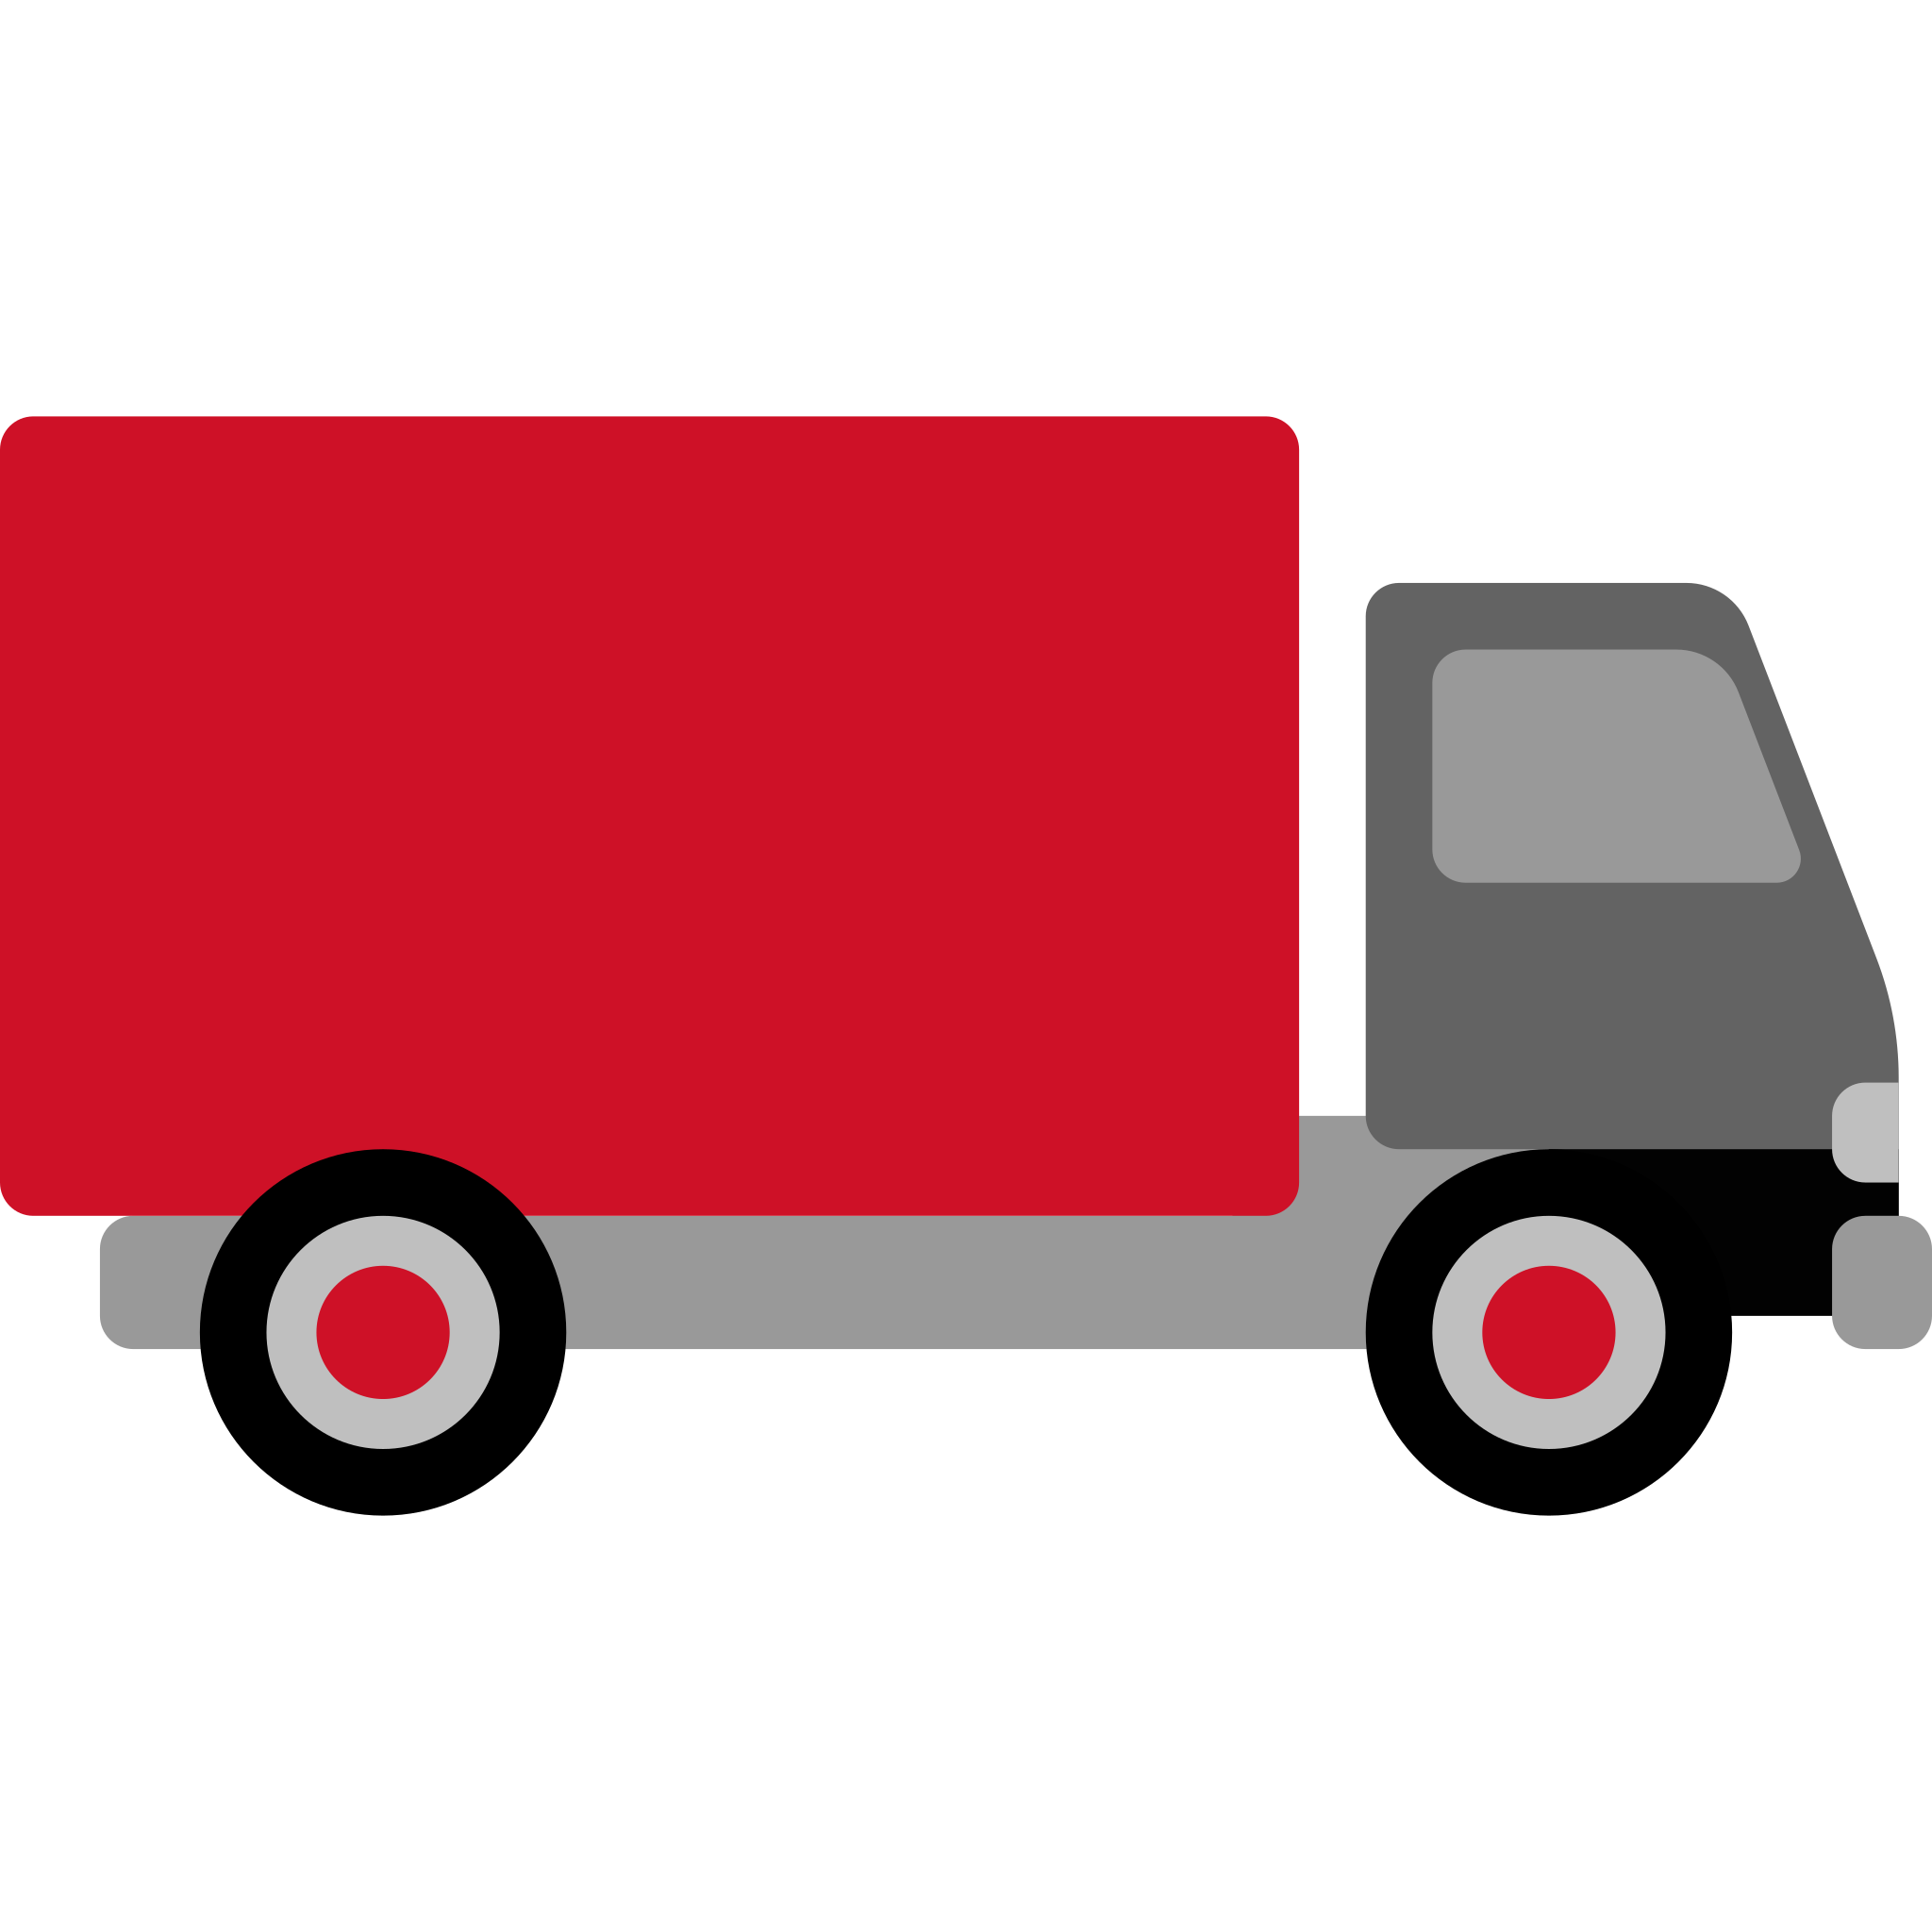 Delivery-truck.svg là biểu tượng thể hiện sự phát triển của ngành vận chuyển hiện đại. Với sự phát triển của thương mại điện tử, việc giao hàng trở nên quan trọng hơn bao giờ hết và biểu tượng này đại diện cho sự nỗ lực không ngừng nghỉ để đưa hàng hóa đến tay khách hàng một cách nhanh chóng và chất lượng.